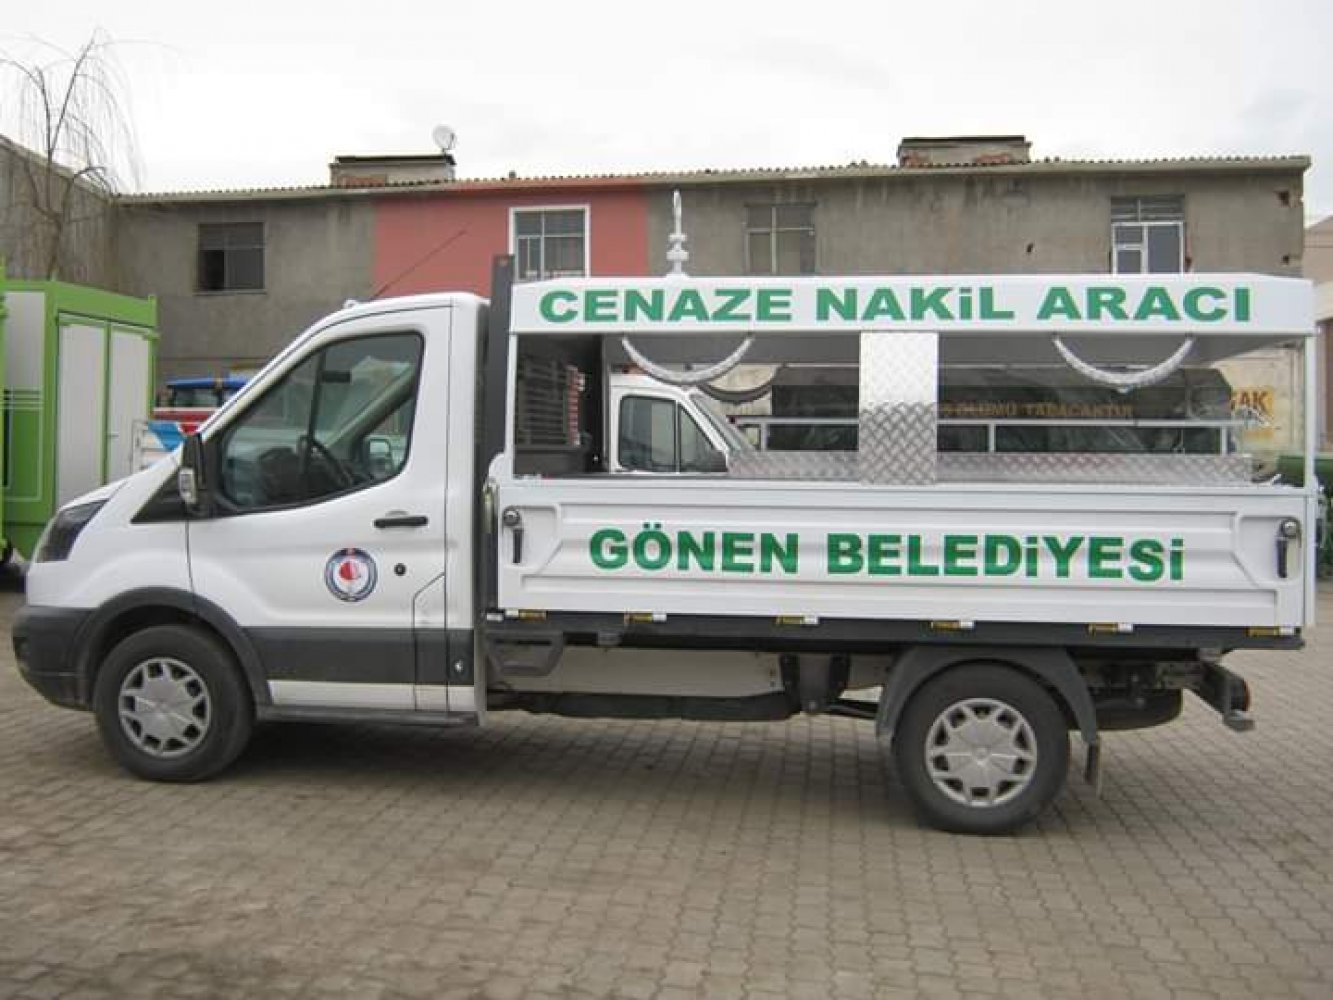 Gönen Belediyesi Cenaze Nakil Aracı